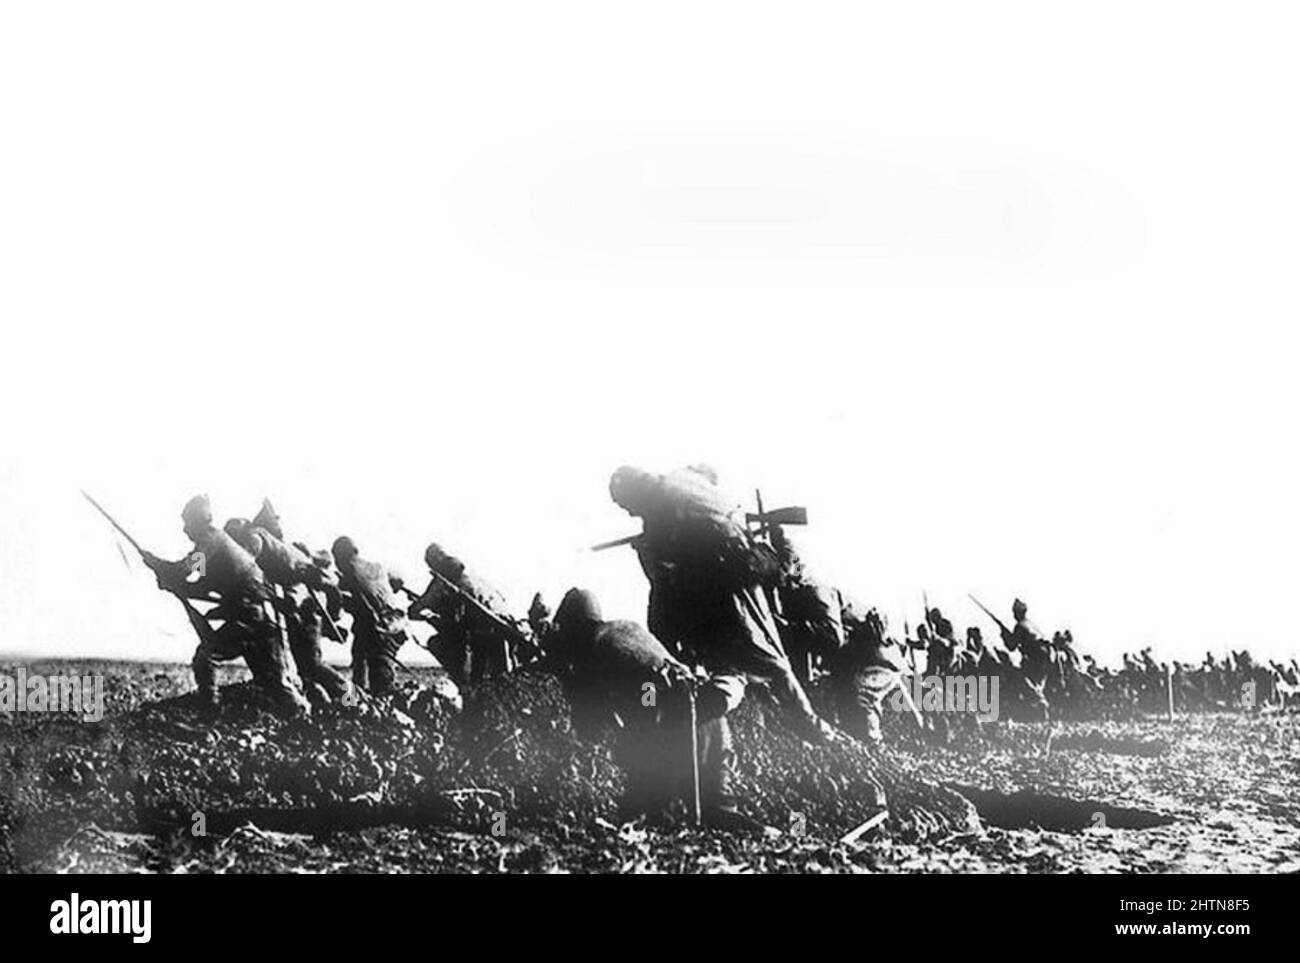 Les troupes ottomanes se sont remenées au sommet lors d'une attaque à Gallipoli pendant la première Guerre mondiale Banque D'Images